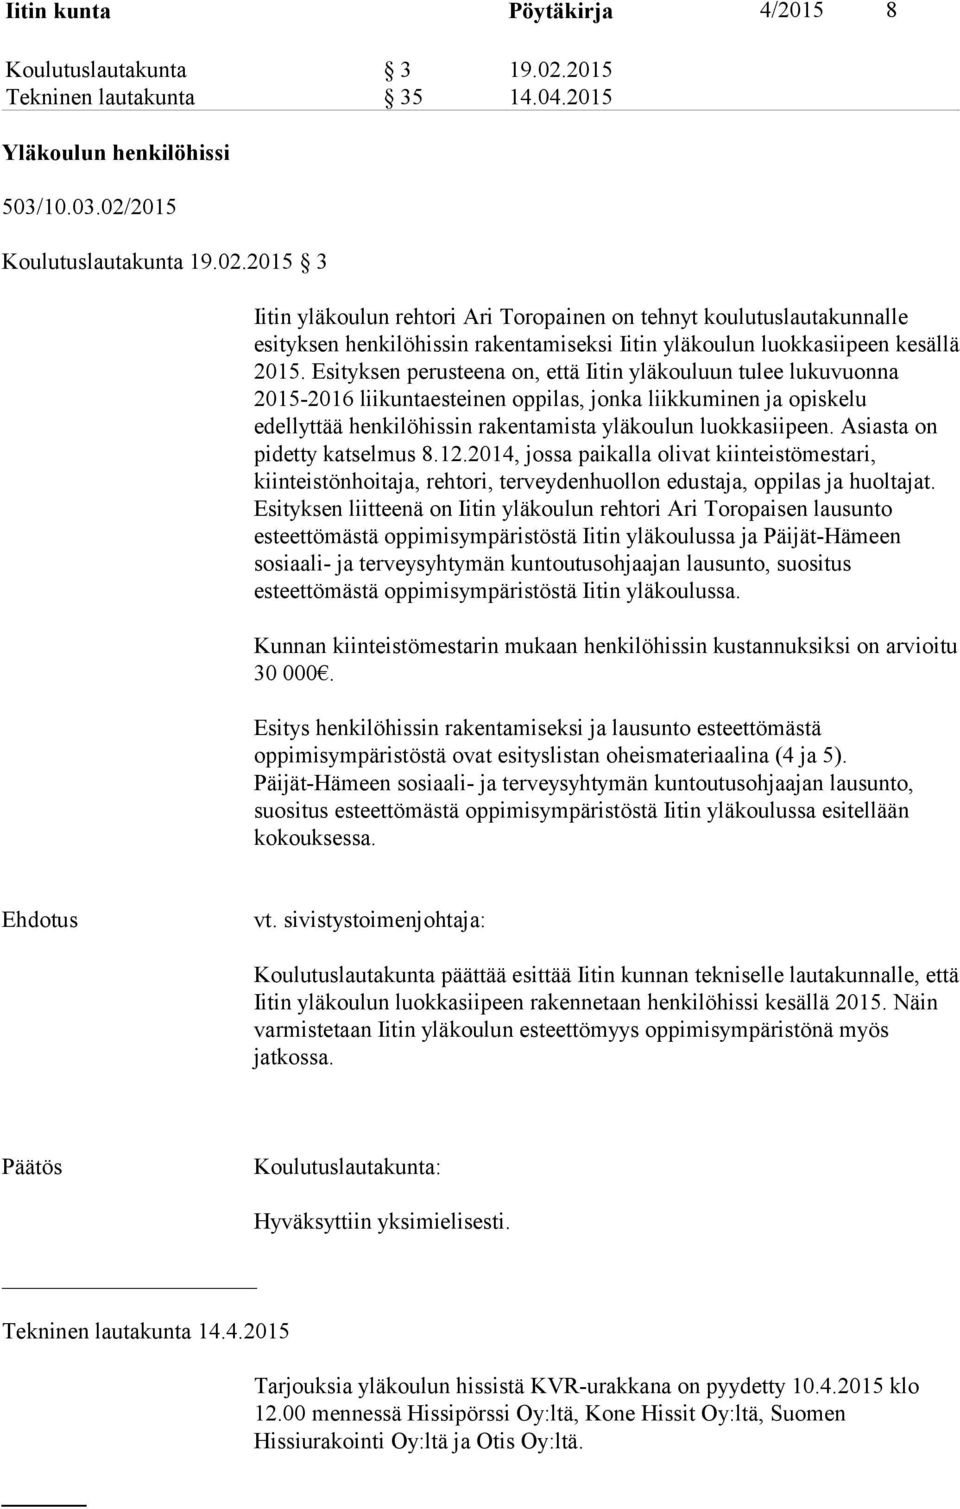 2015 Koulutuslautakunta 19.02.2015 3 Iitin yläkoulun rehtori Ari Toropainen on tehnyt koulutuslautakunnalle esityksen henkilöhissin rakentamiseksi Iitin yläkoulun luokkasiipeen kesällä 2015.